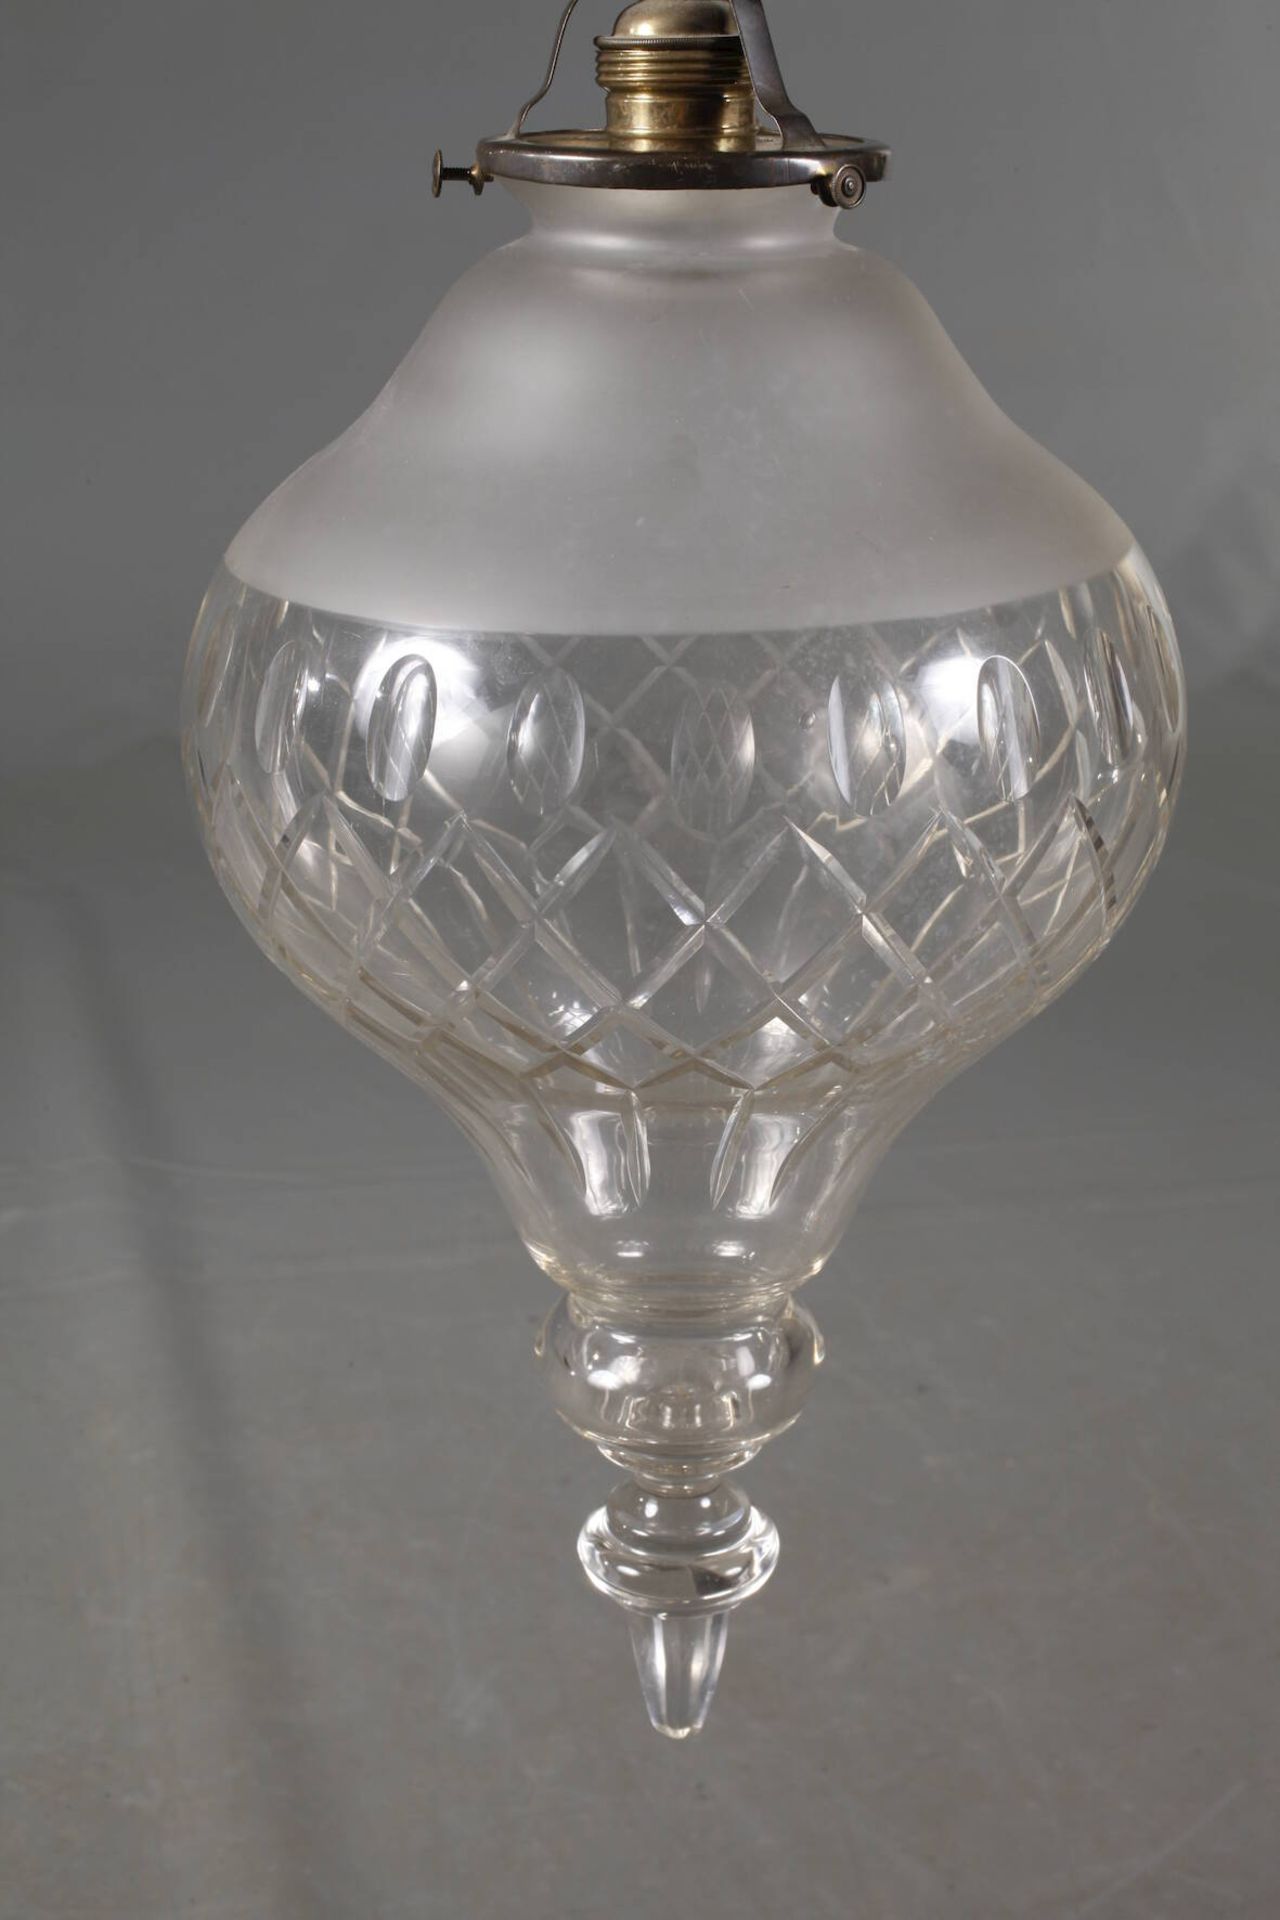 Deckenlampeum 1900, zartes Messinggestänge mit zurückgenommenem Blattdekor, abgehängte Lampenfassung - Image 3 of 4